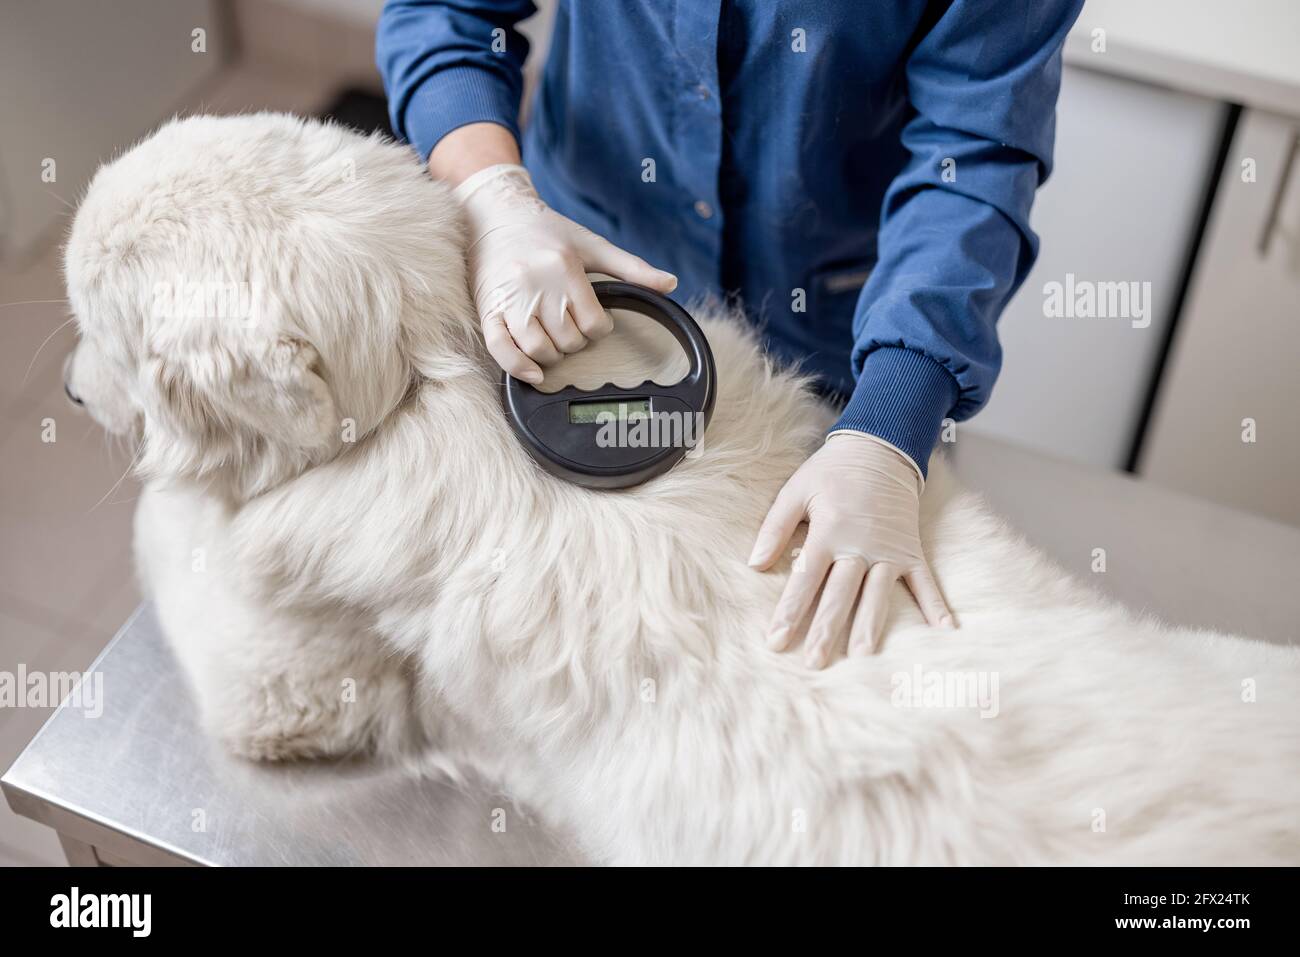 Veterinario controllo microchip impianto sotto la pelle del cane da pecora in clinica di veterinario con dispositivo scanner. Registrazione e identificazione di animali domestici. Passaporto ID animale. Foto Stock